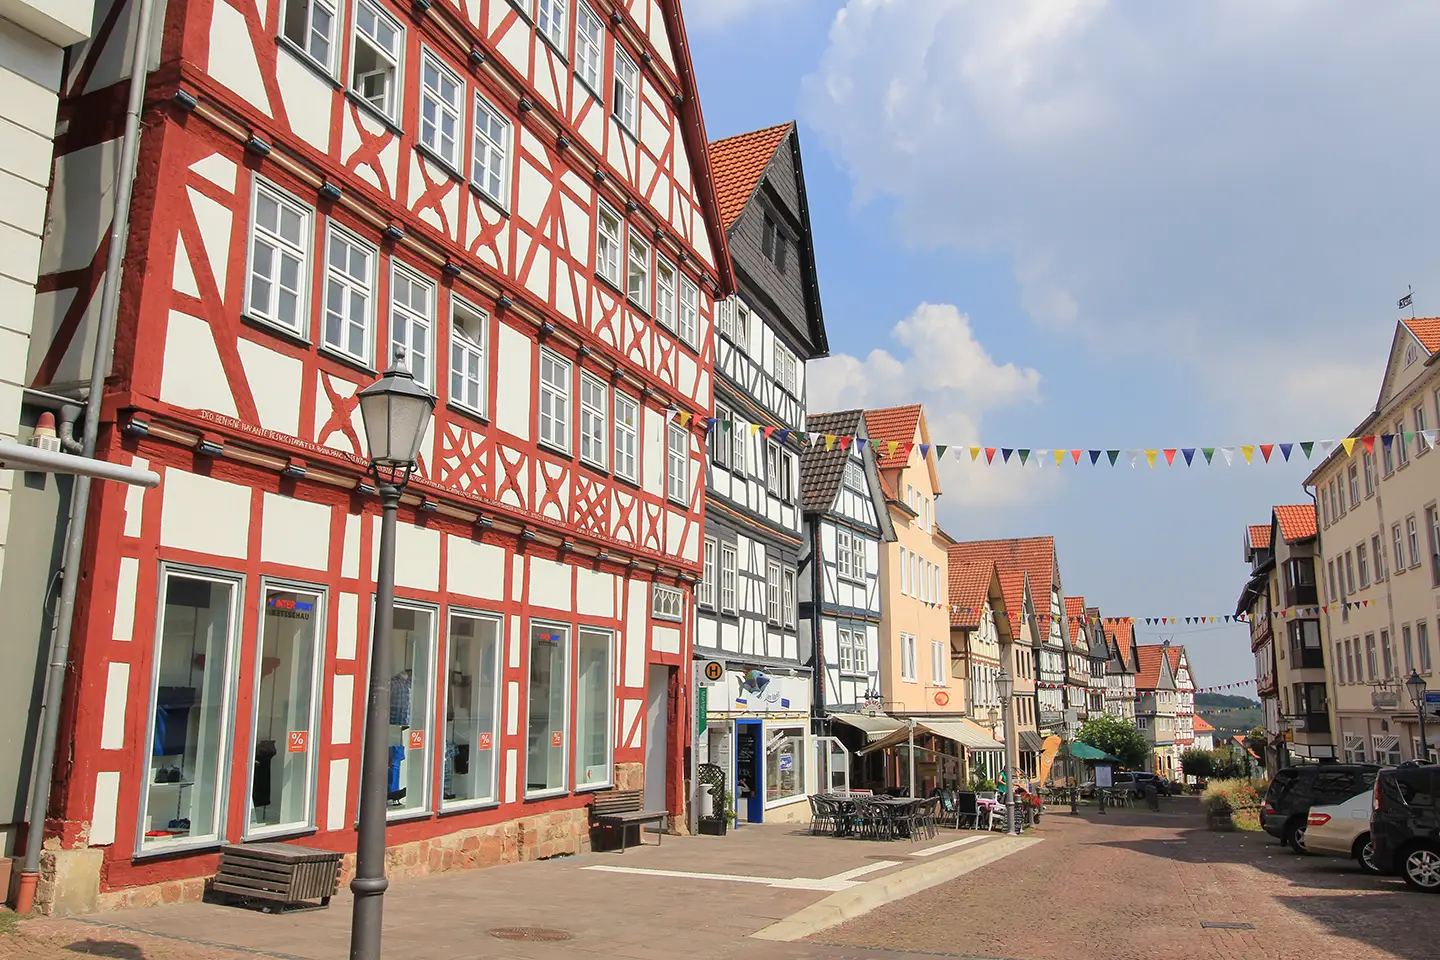 Fachwerkhäuser in der Altstadt von Bad Wildungen mit Cafés und Girlanden